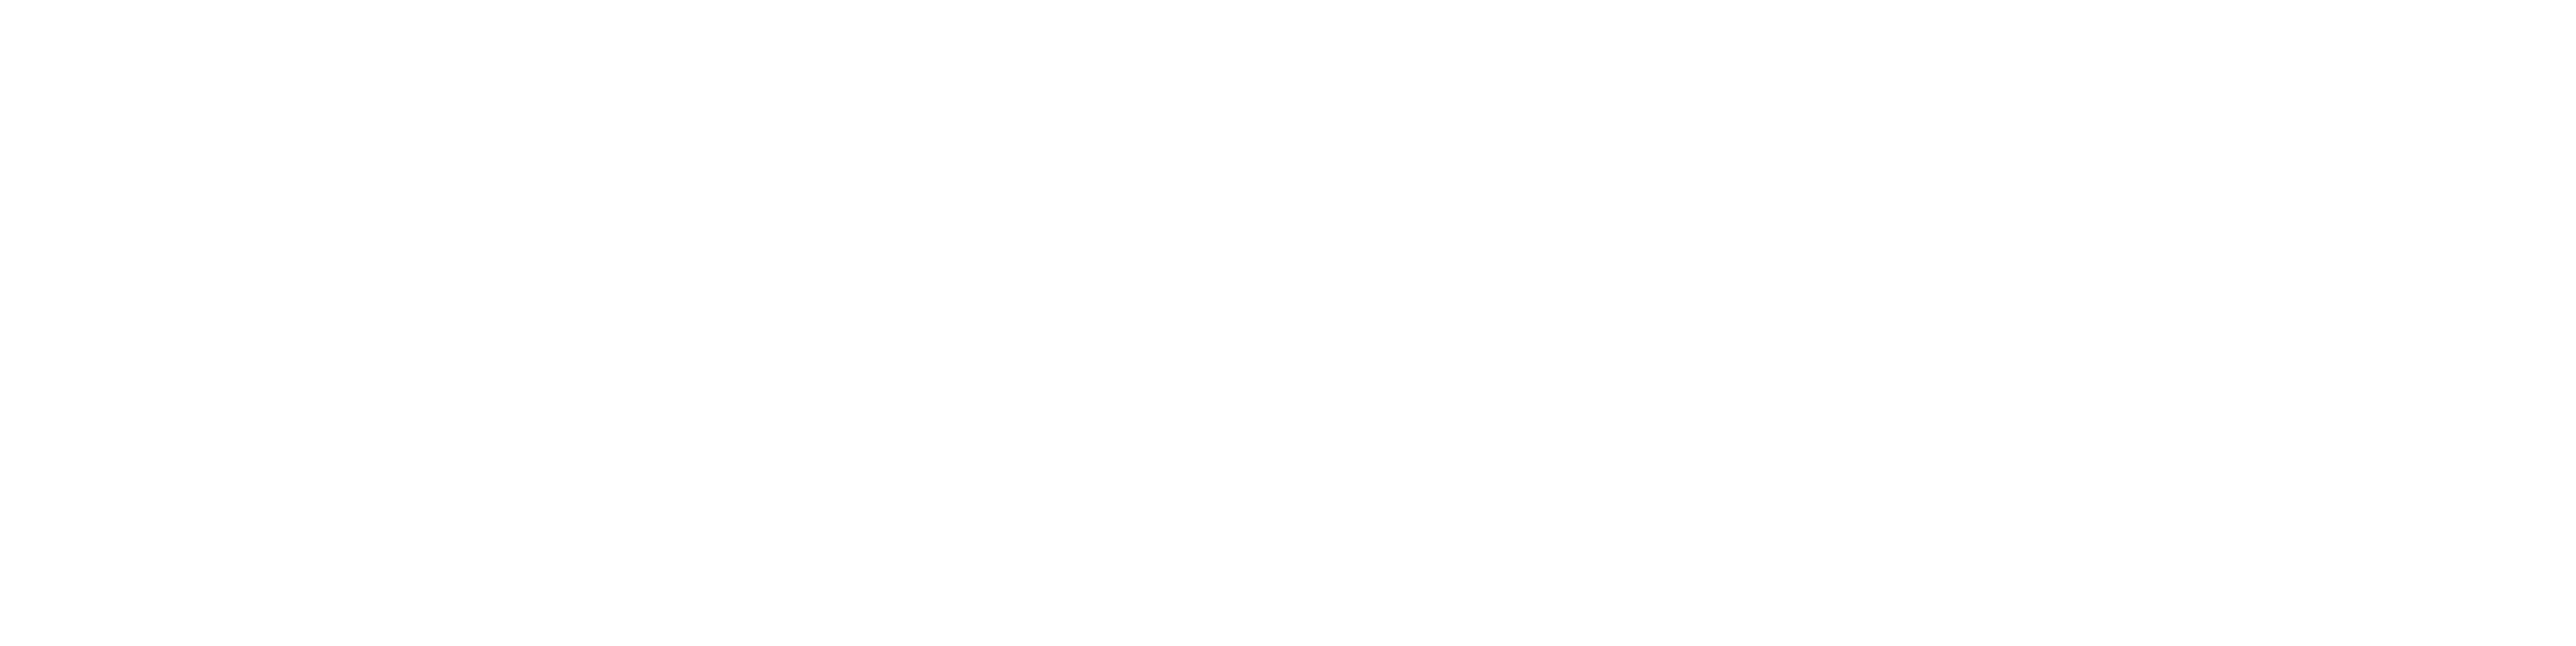 DeliciousFilms Logo